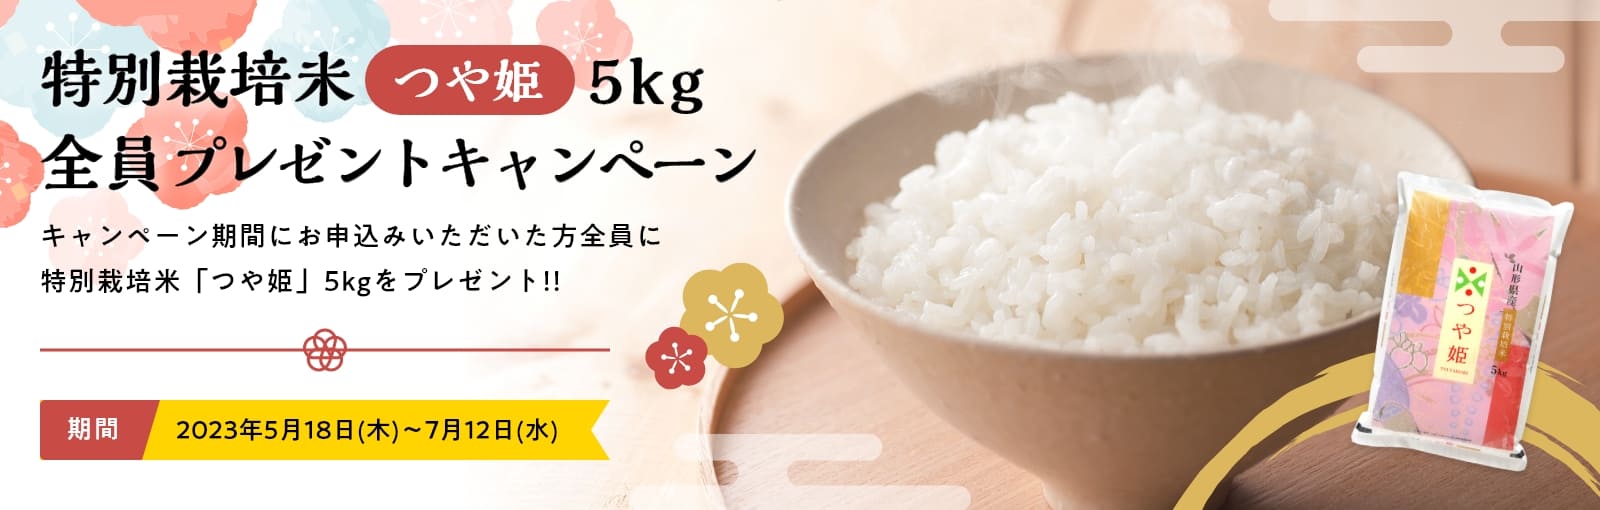 うるのん特別栽培米「つや姫」5kg全員プレゼントキャンペーン